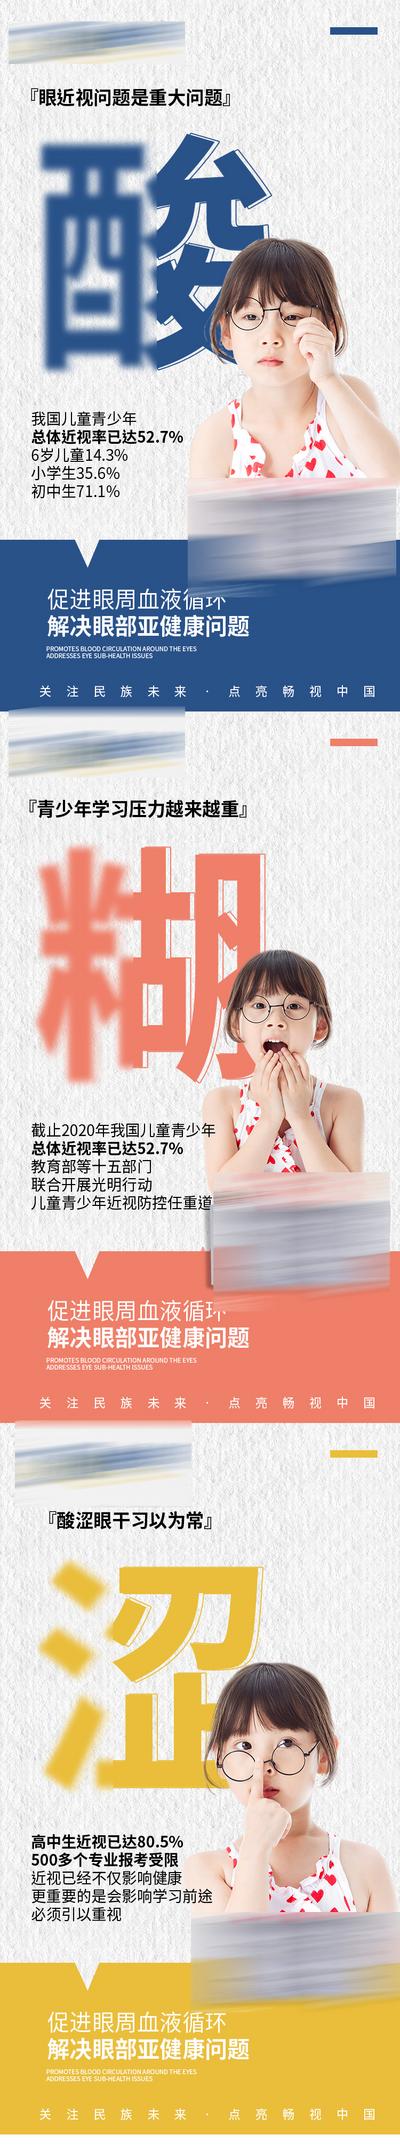 南门网 广告 新零售 眼睛 视力 宣传 微商 防控 护眼 大健康 保健 大字报 系列 健康